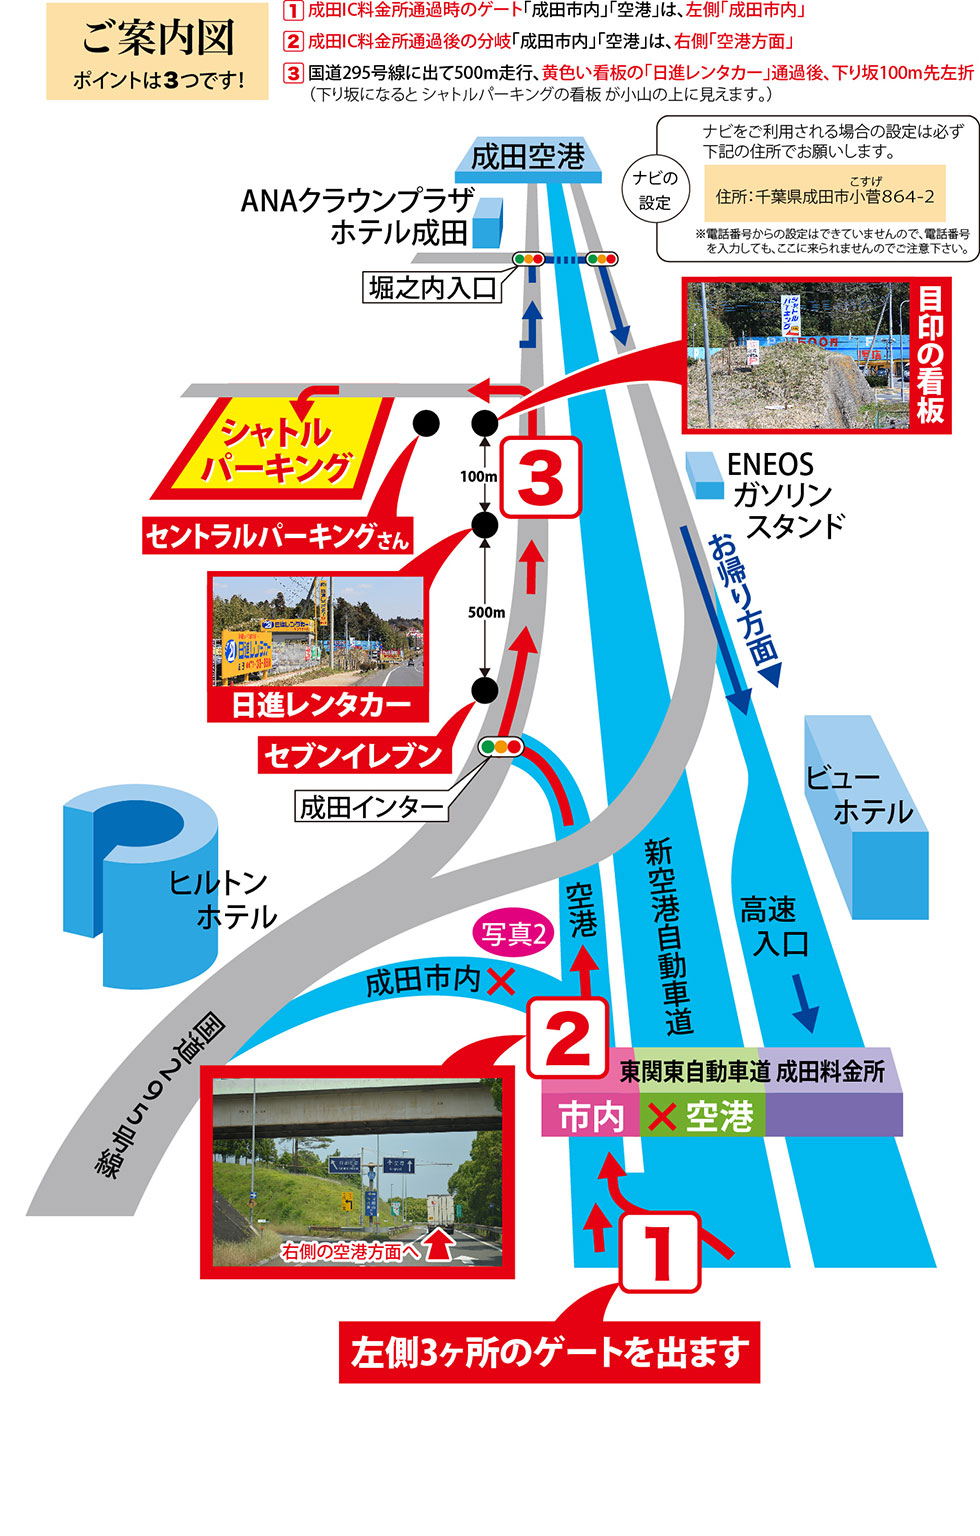 ポイントは3つです。【1】成田IC料金所通過時のゲート「成田市内」「空港」は、左側「成田市内」へ進む。 【2】成田IC料金所通過後の分岐「成田市内」「空港」は、右側「空港方面」へ進む。 【3】国道295号線に出て500m走行、黄色い看板の「日進レンタカー」通過後、下り坂100m先左折（下り坂になるとシャトルパーキングの看板が小山の上に見えます）。　※カーナビの設定は「千葉県成田市小菅1045-1」（お隣のセントラルパーキングさん）でお越し下さい。（※電話番号からの設定はできていませんので、電話番号を入力しても、ここに来られませんのでご注意下さい。）